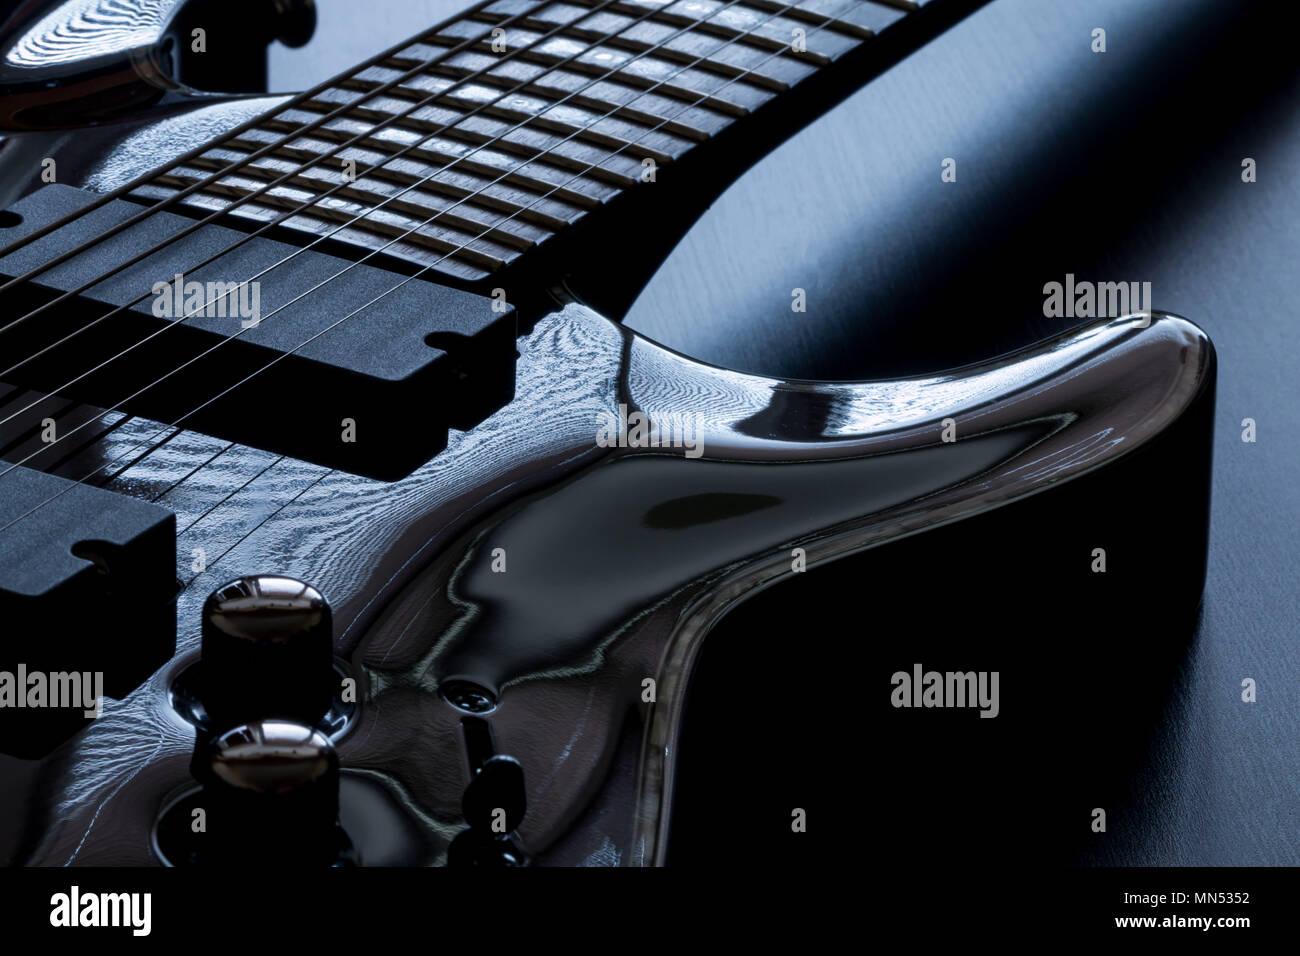 Nero chitarra elettrica dettaglio close-up su sfondo nero Foto Stock